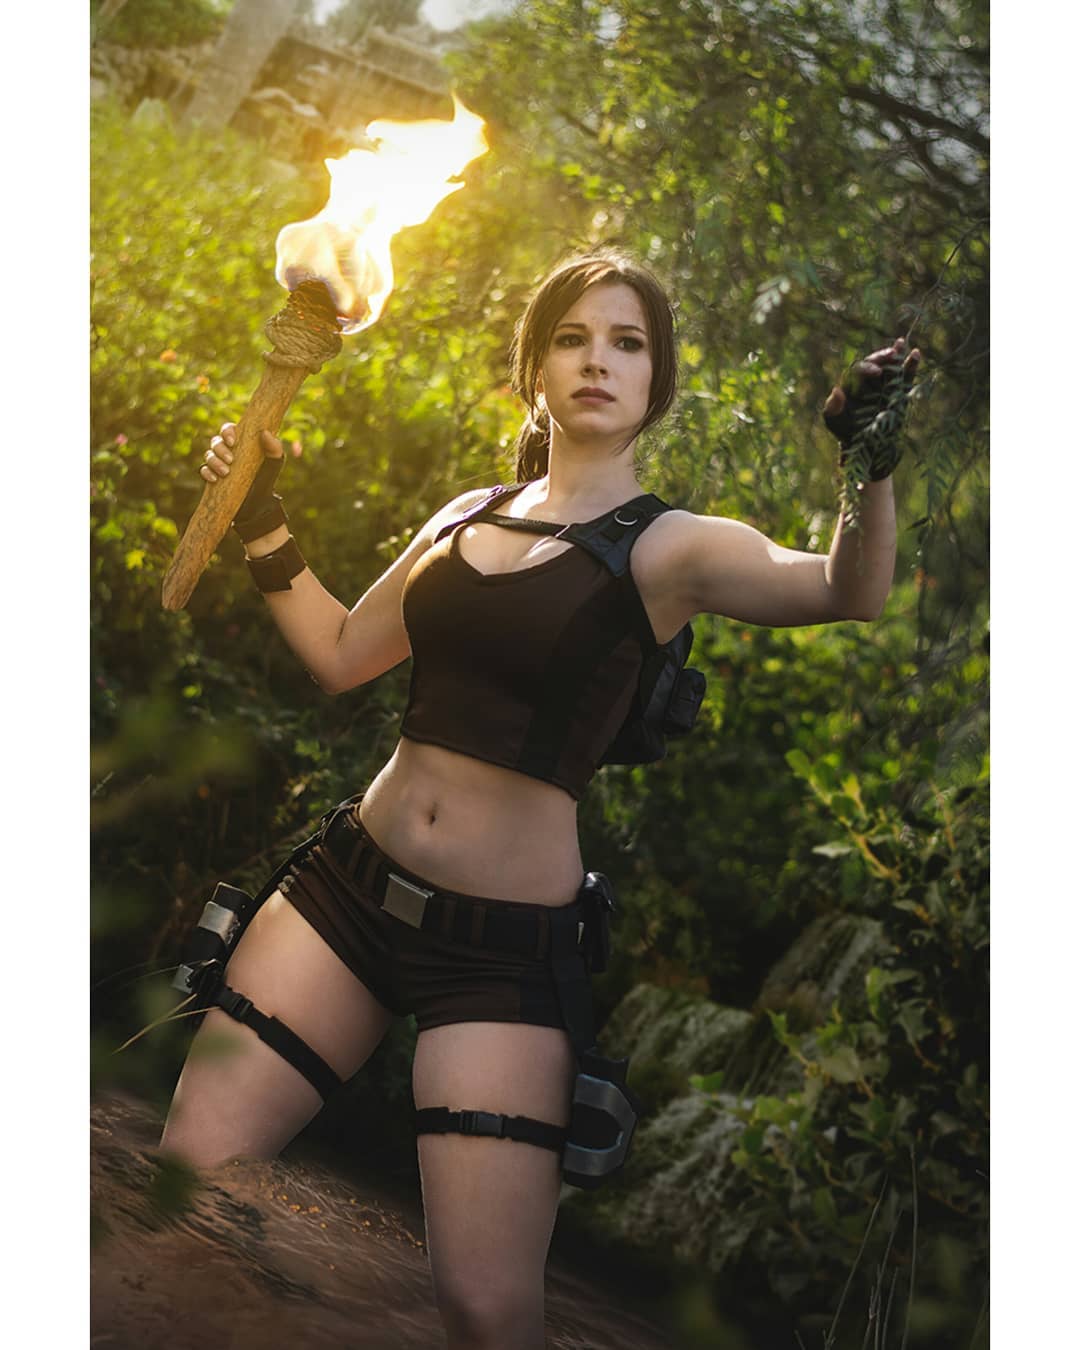 คอสเพลย์ Lara Croft ในเกม Tomb Raider จาก enjinight